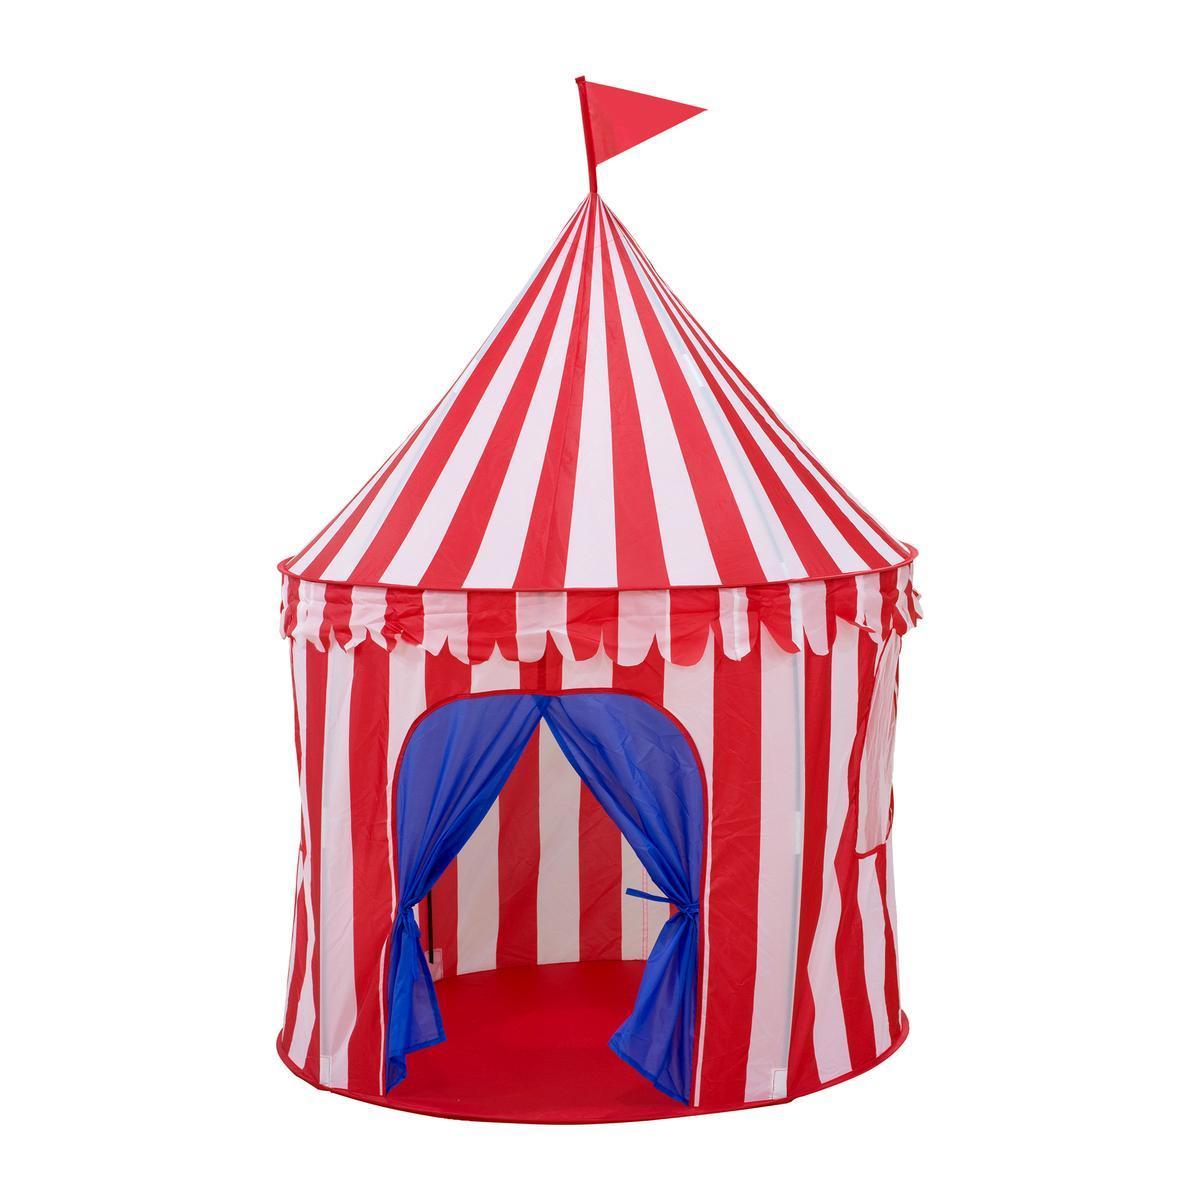 Tente pour enfants - ø 103 x H 135 cm - Rouge, blanc et bleu